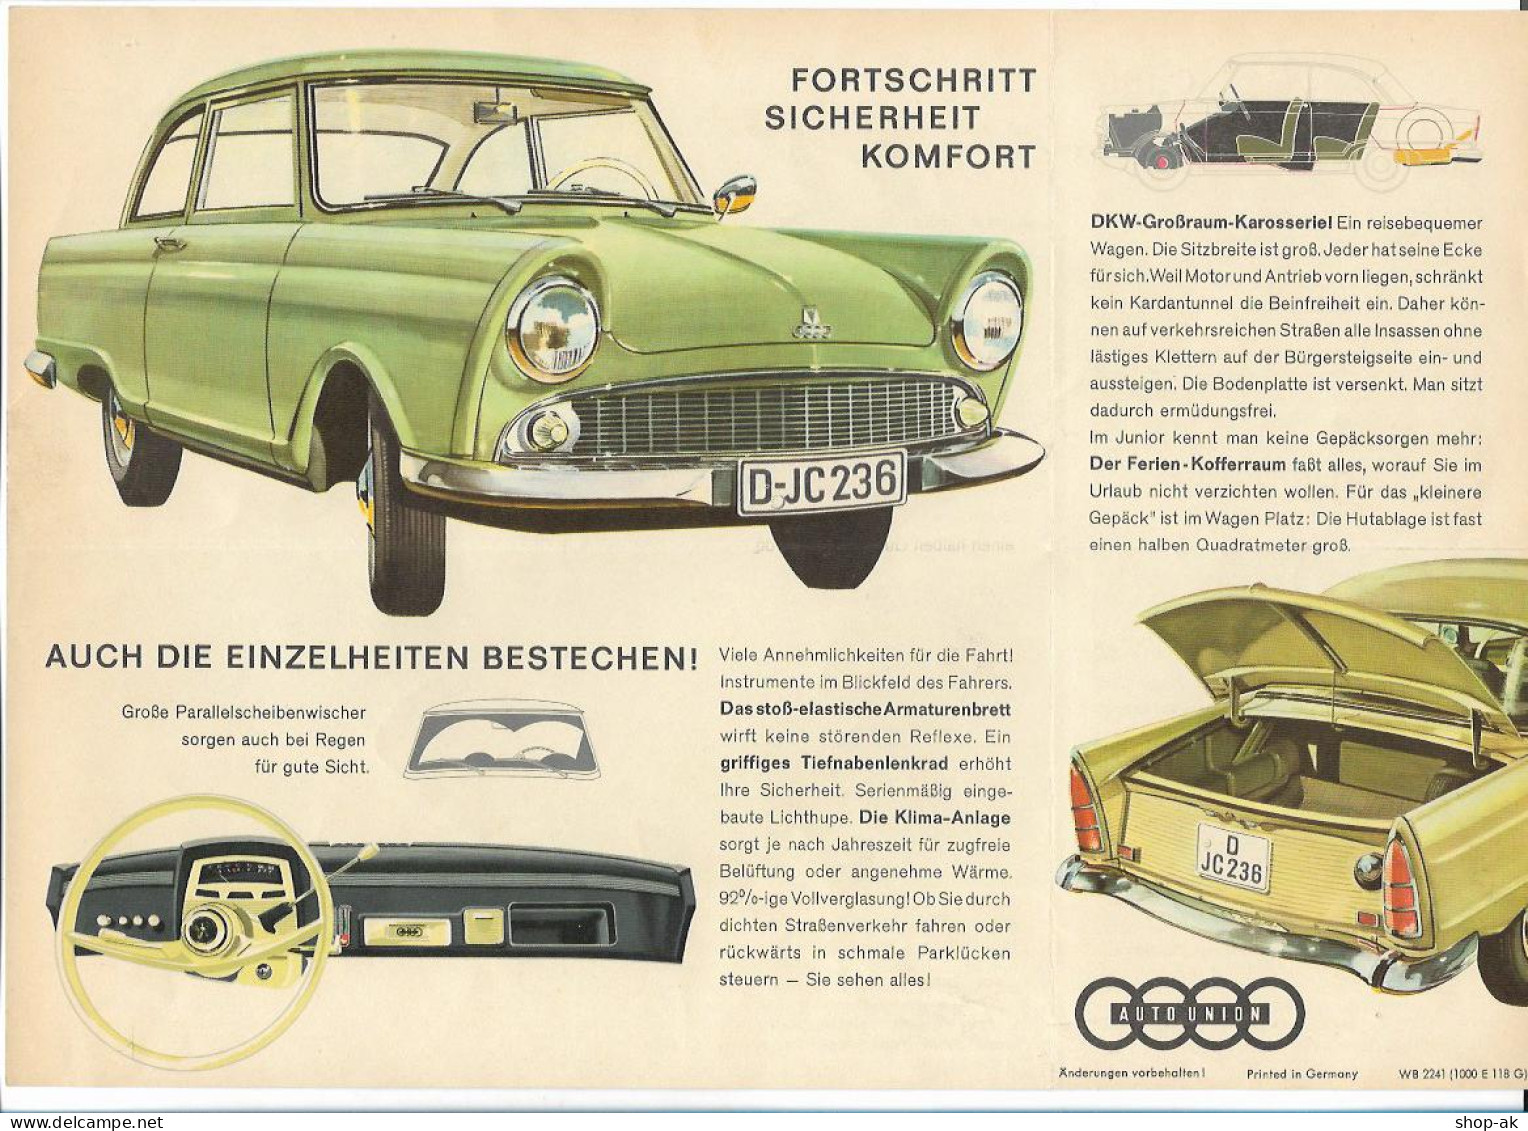 XX15410/ DKW Junior Auto Union Faltblatt Ca.1960  - Cars